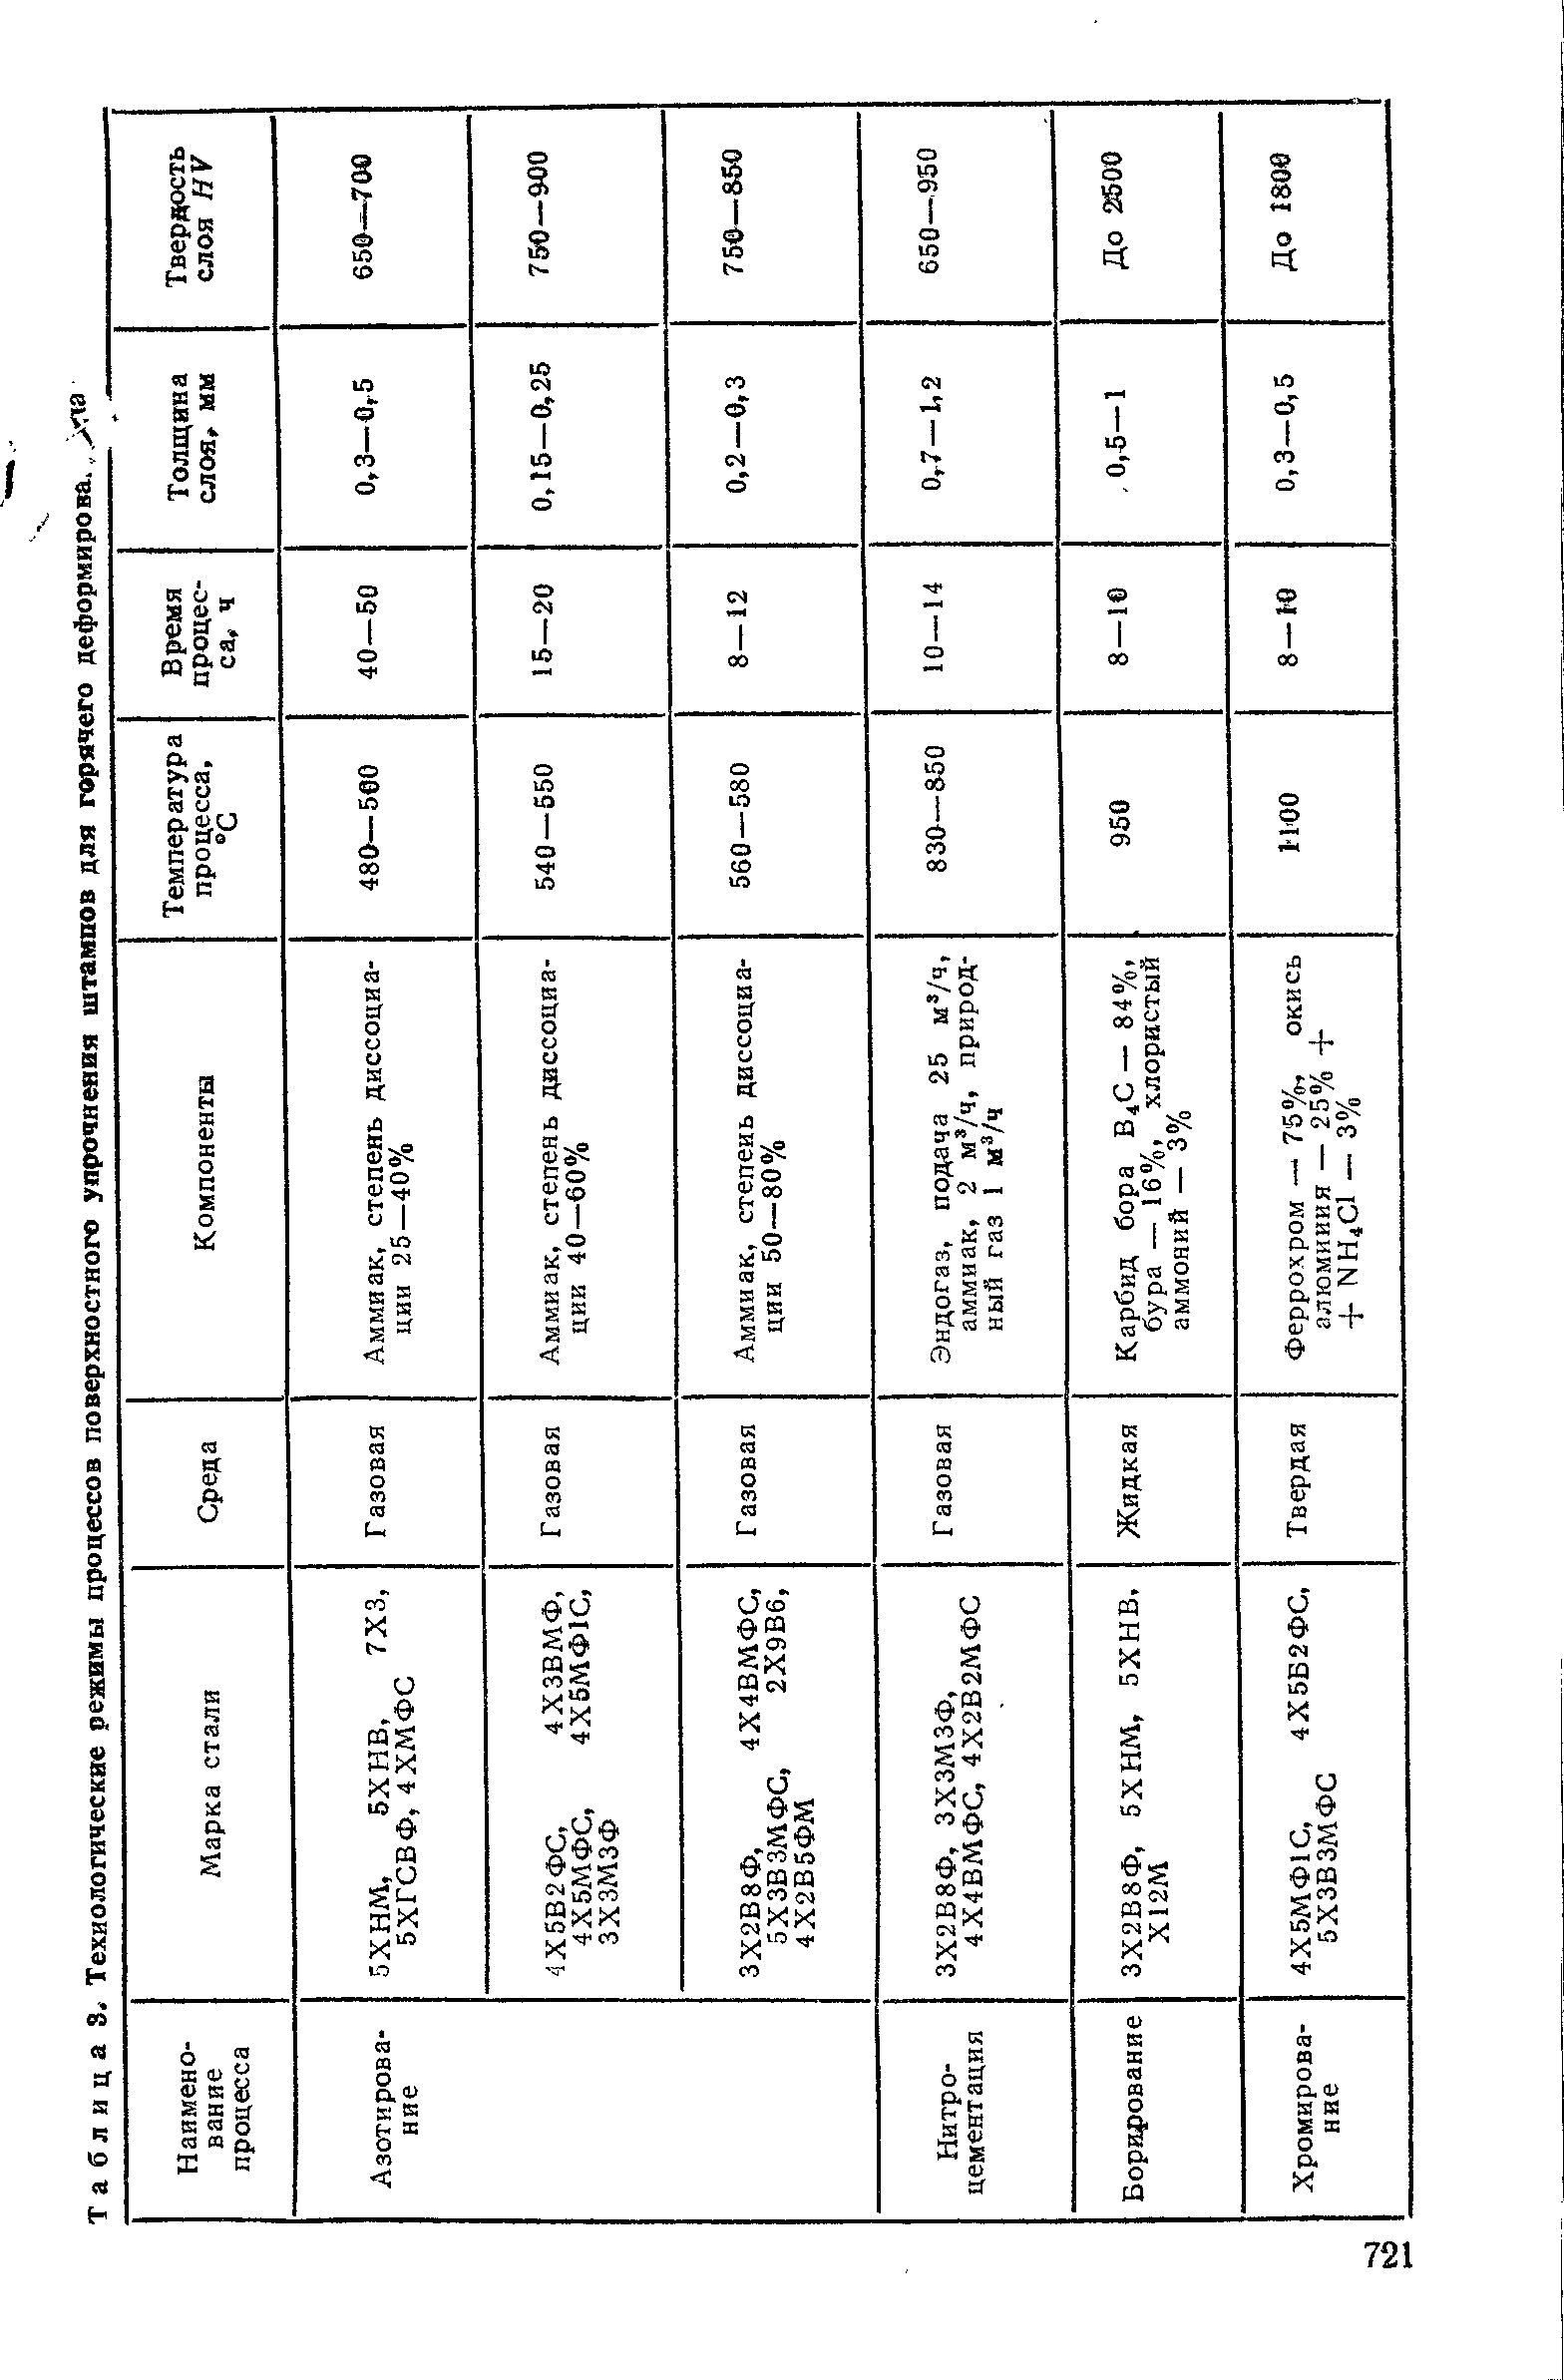 Таблица S< Технологические режимы процессов поверхностного упрочнения штампов для горячего деформирова.,>па
